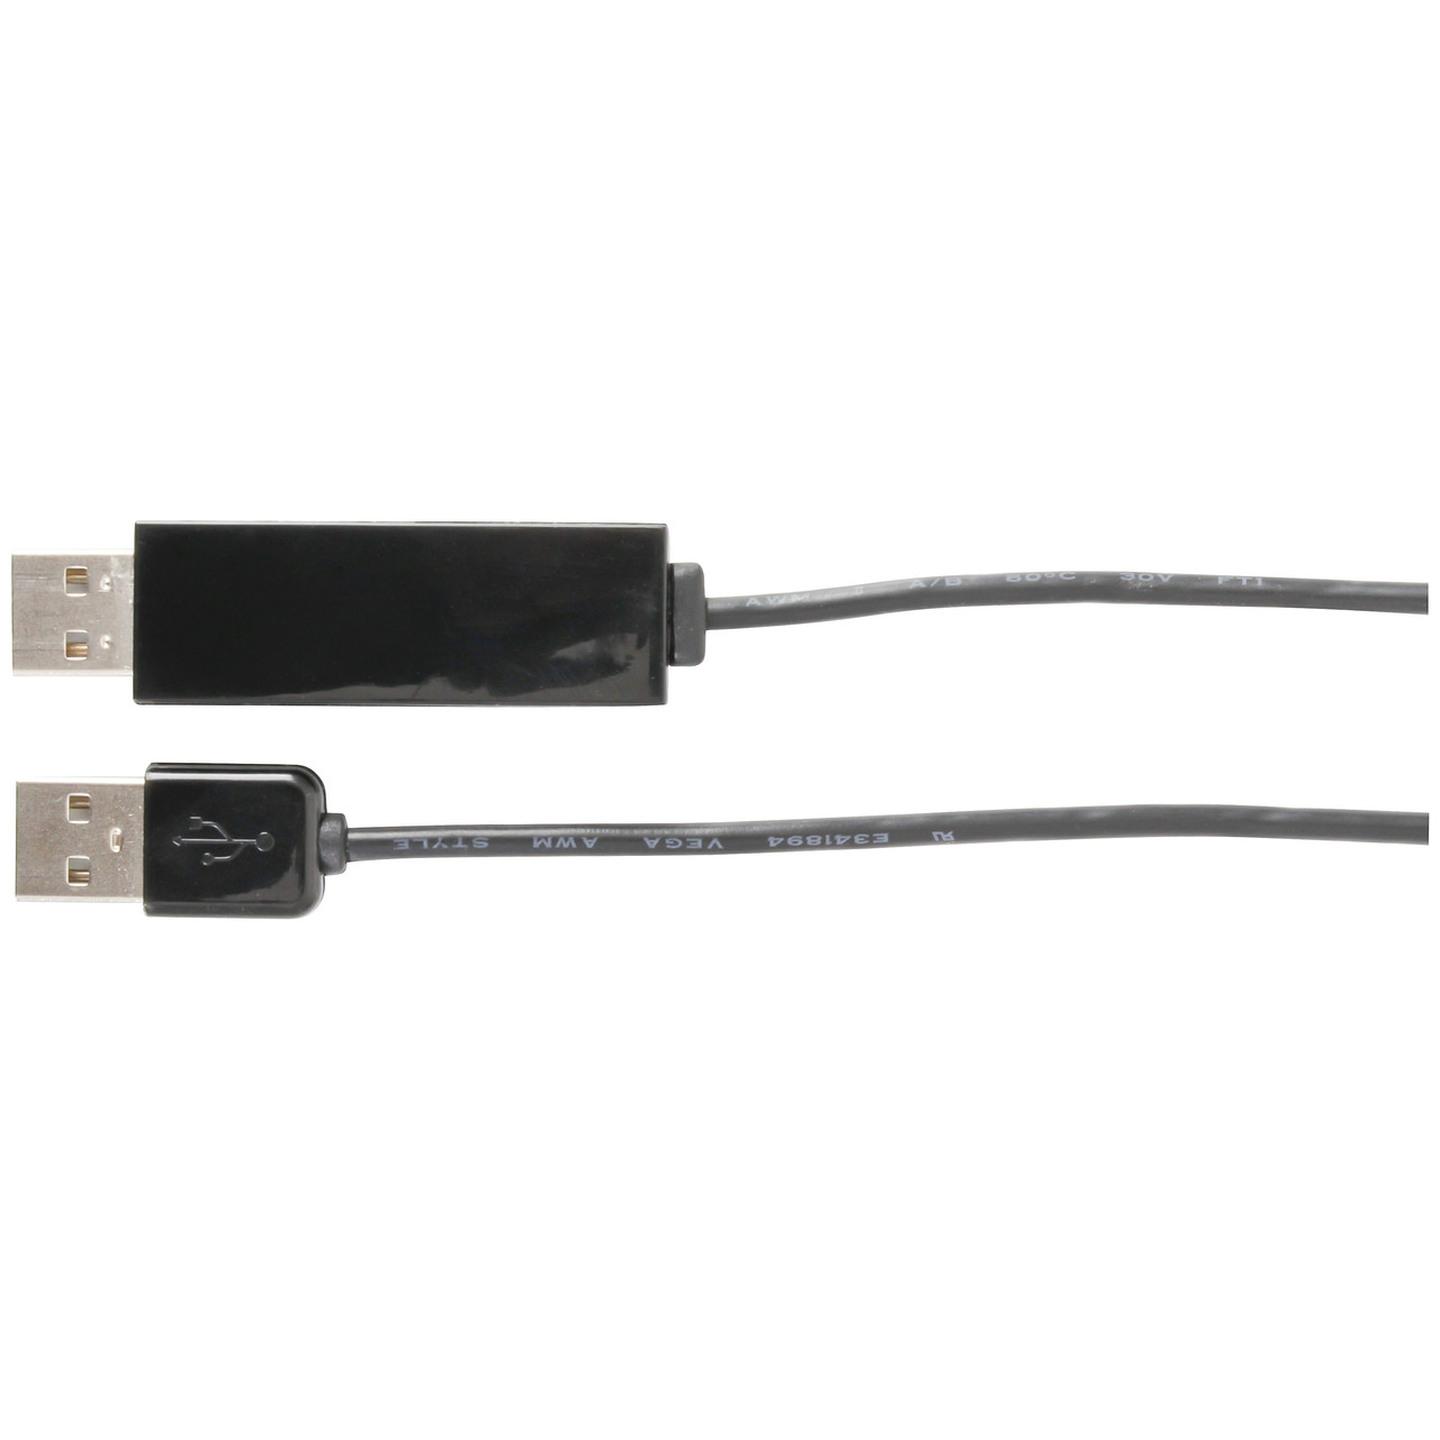 USB KVM & Data Transfer Cable